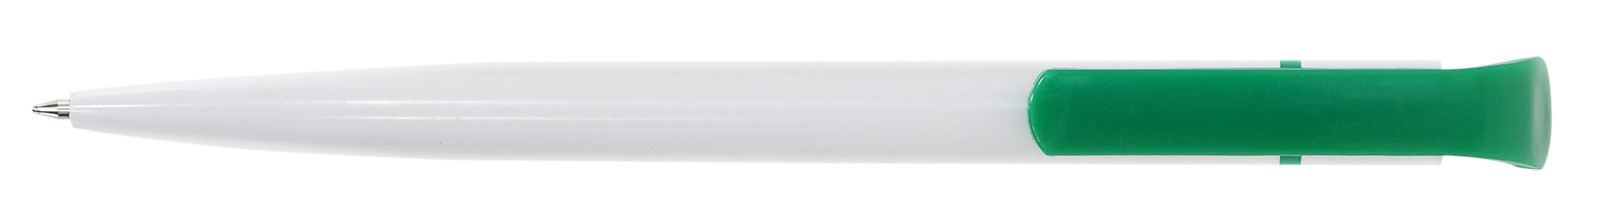 Ручка для логотипа шариковая автоматическая INFORMAT НИКА 0,7 мм, синяя, бело-зеленый корпус оптом